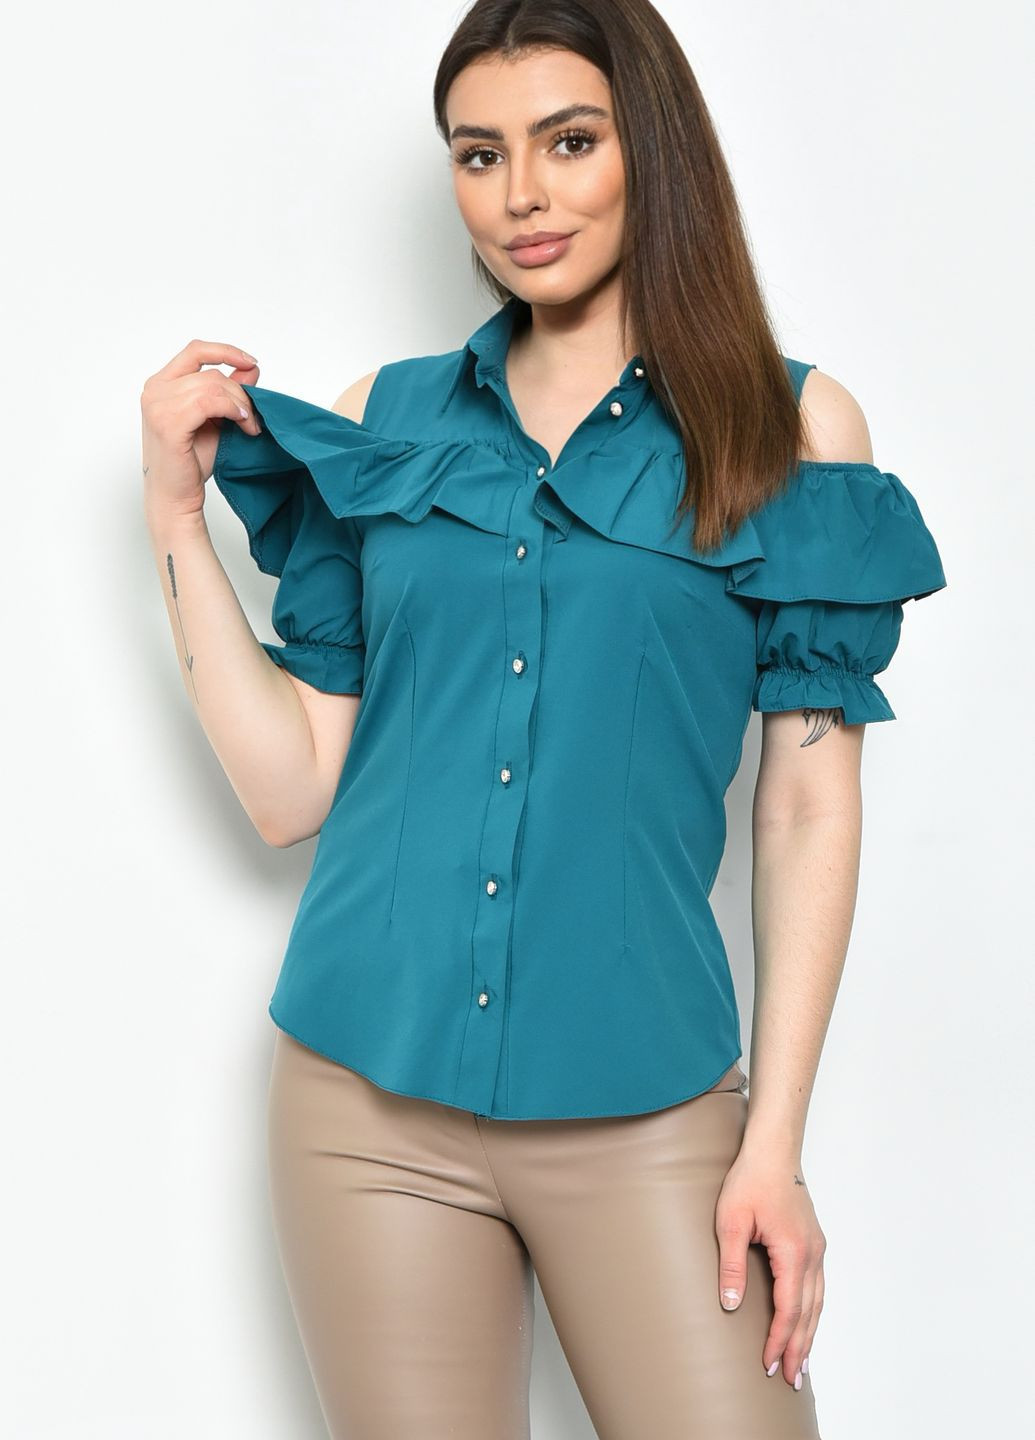 Изумрудная летняя блуза женская однотонная изумрудного цвета с баской Let's Shop